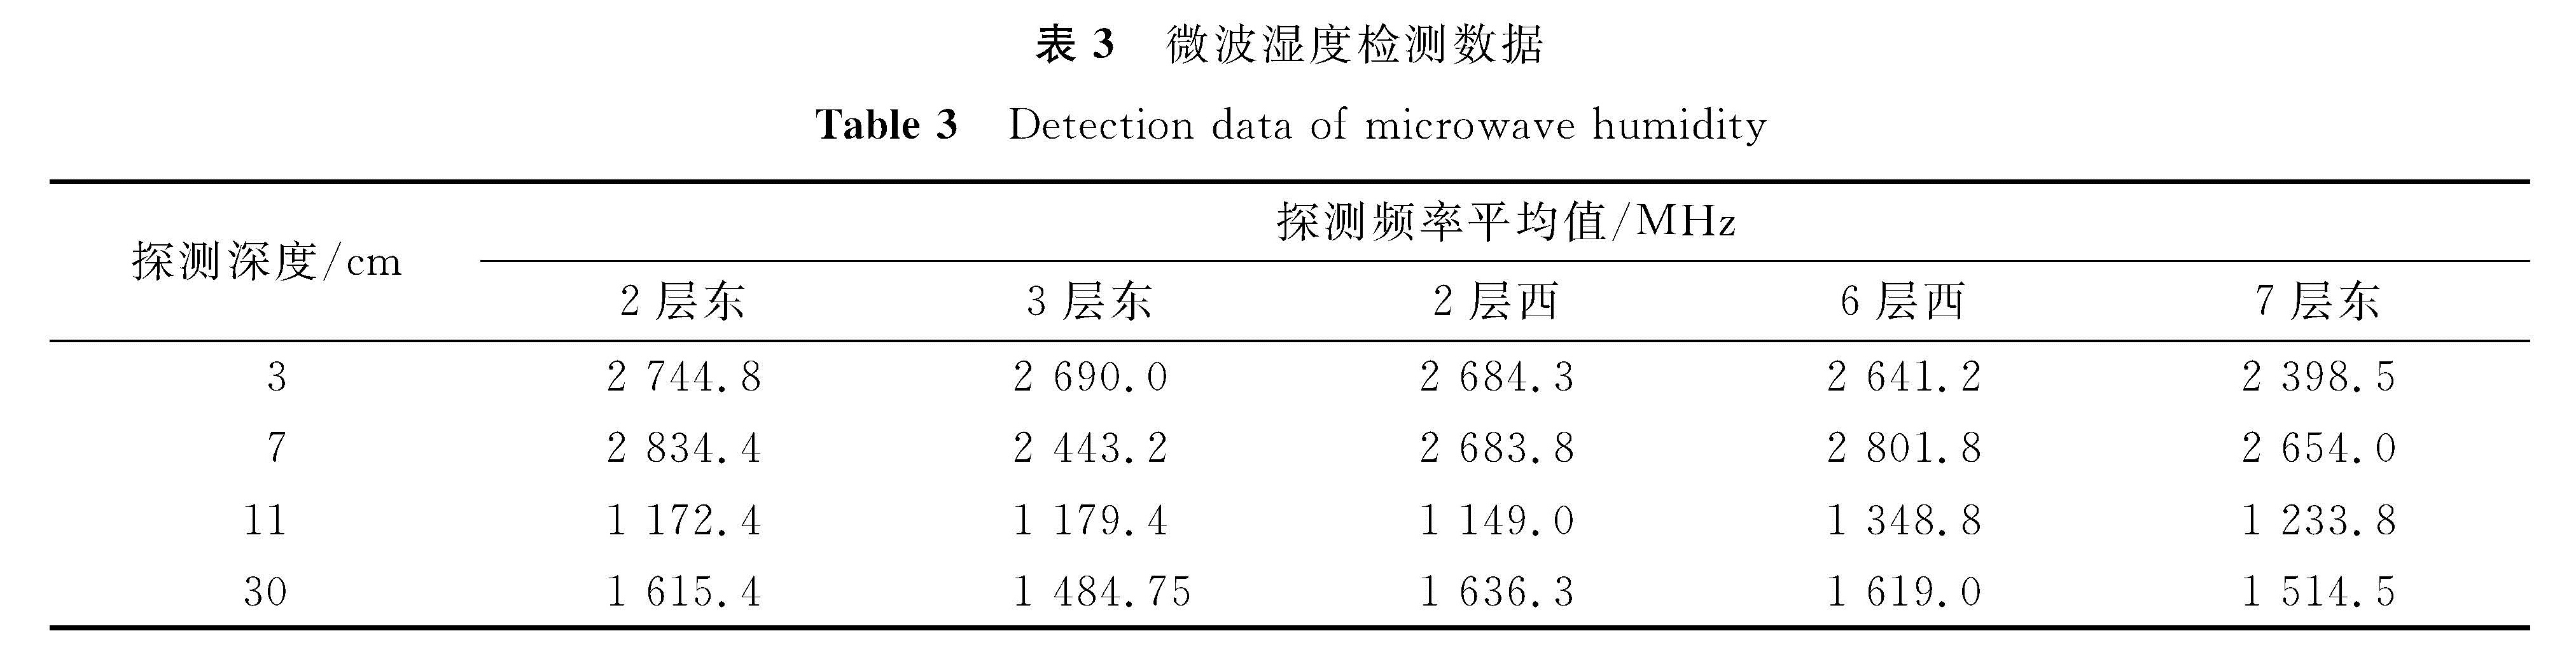 表3 微波湿度检测数据<br/>Table 3 Detection data of microwave humidity